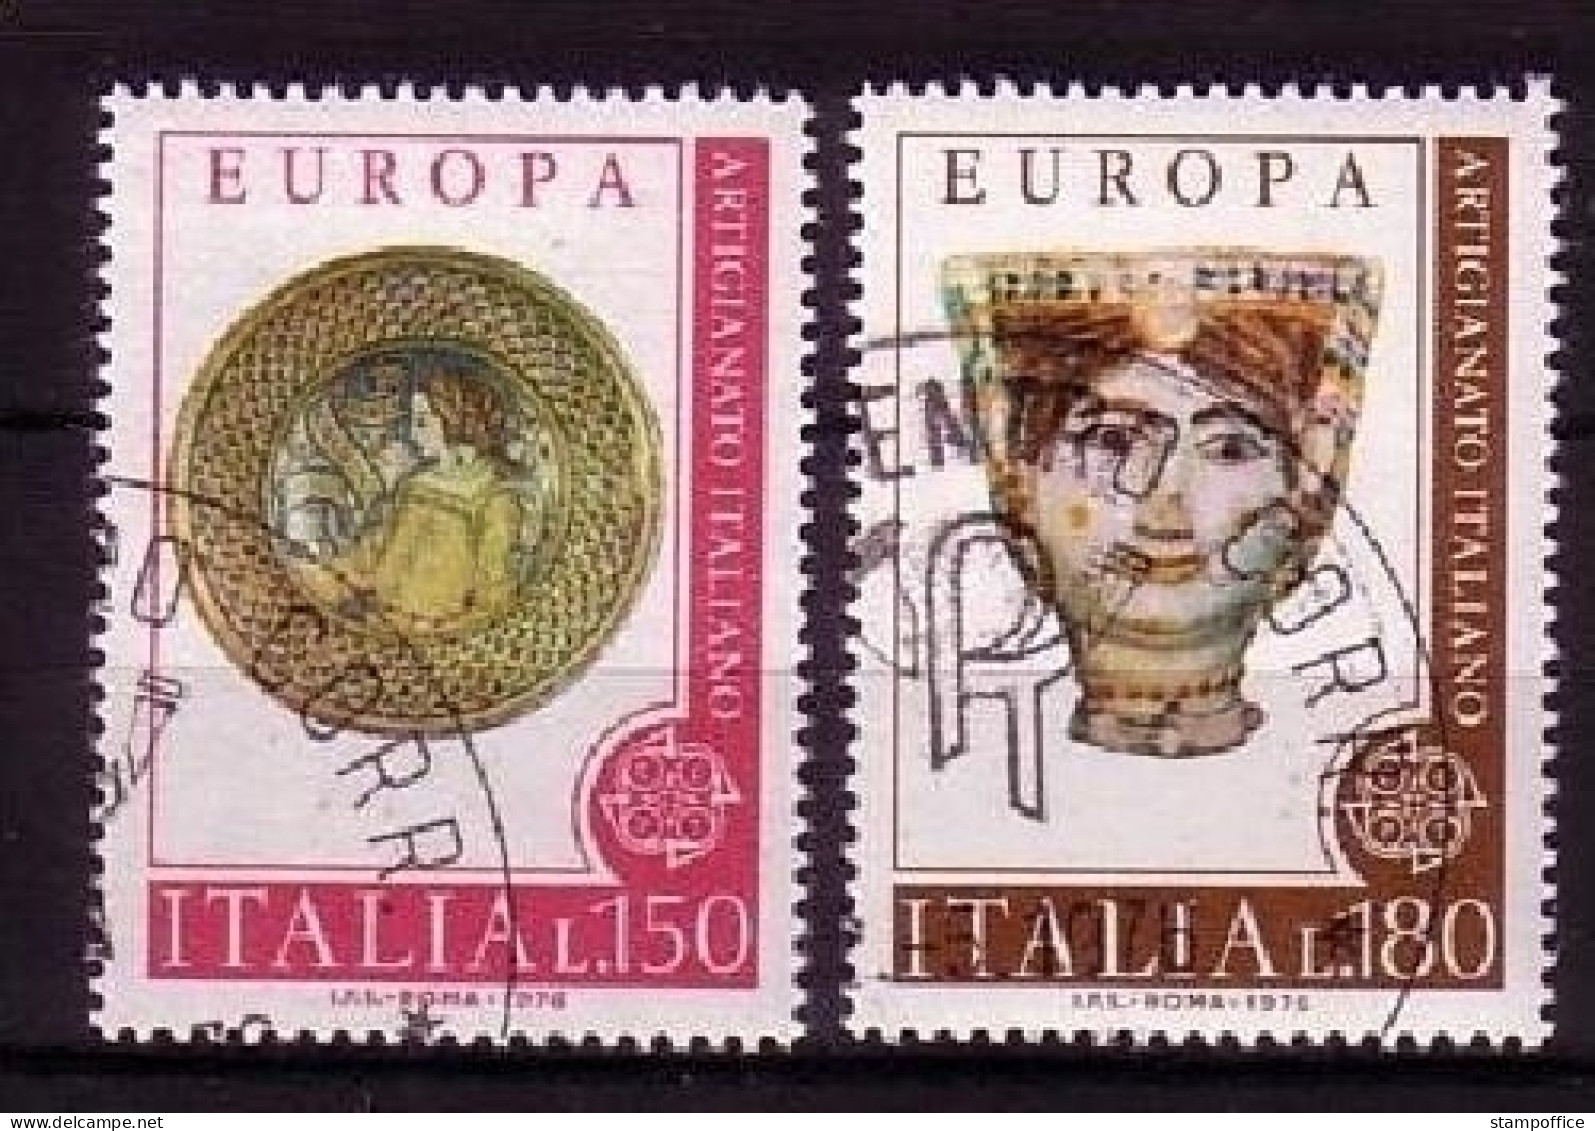 ITALIEN MI-NR. 1530-1531 GESTEMPELT(USED) EUROPA 1976 KUNSTHANDWERK - 1976